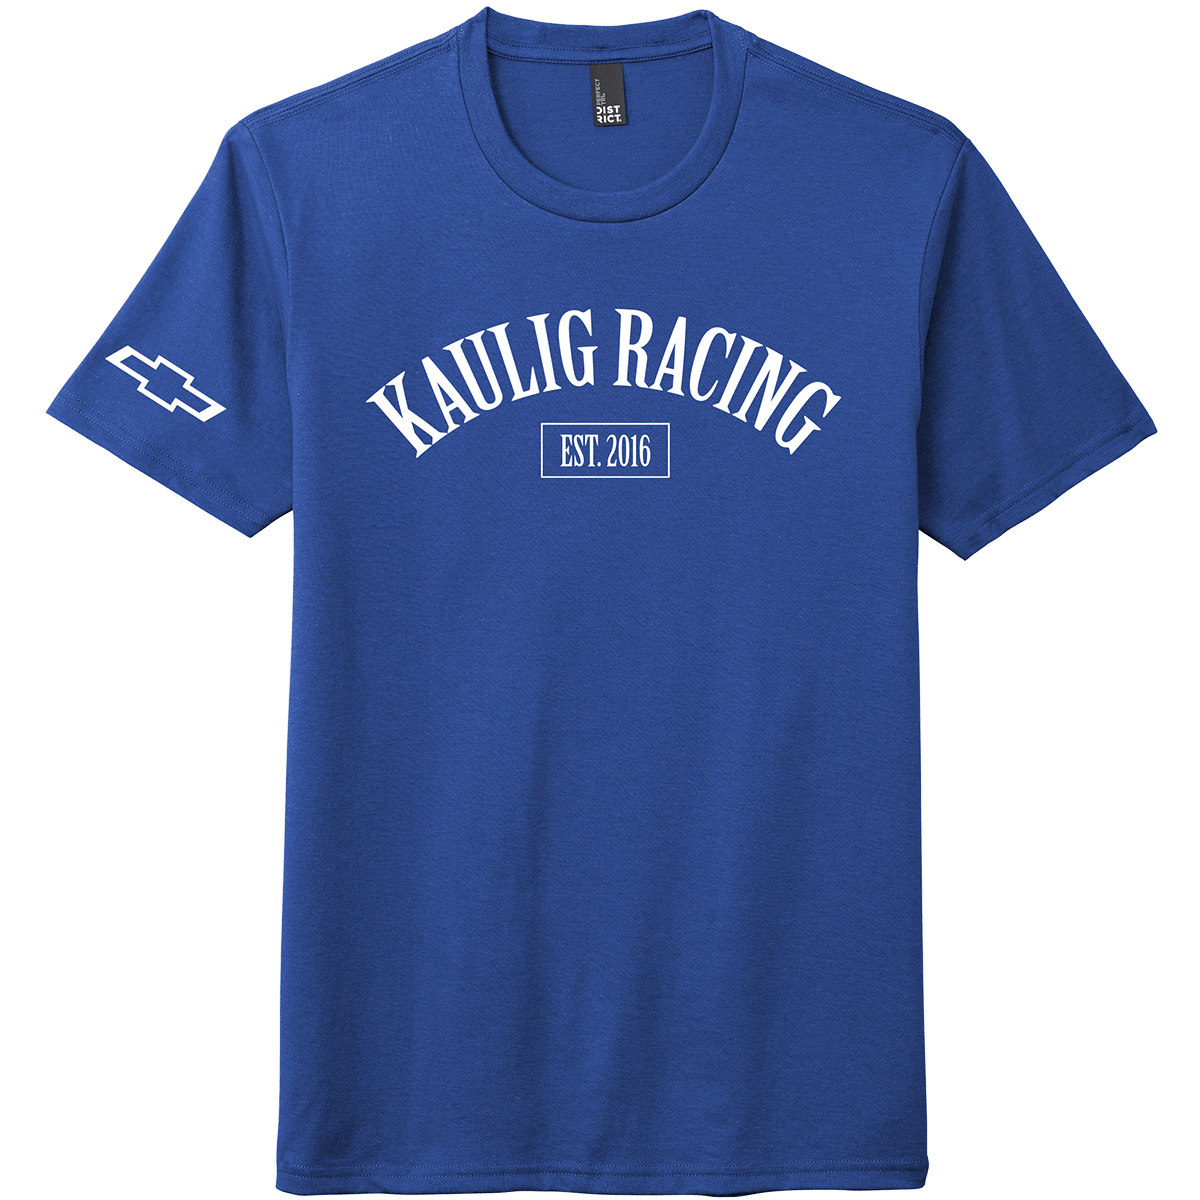 Kaulig Racing Baseball Logo Tee Image